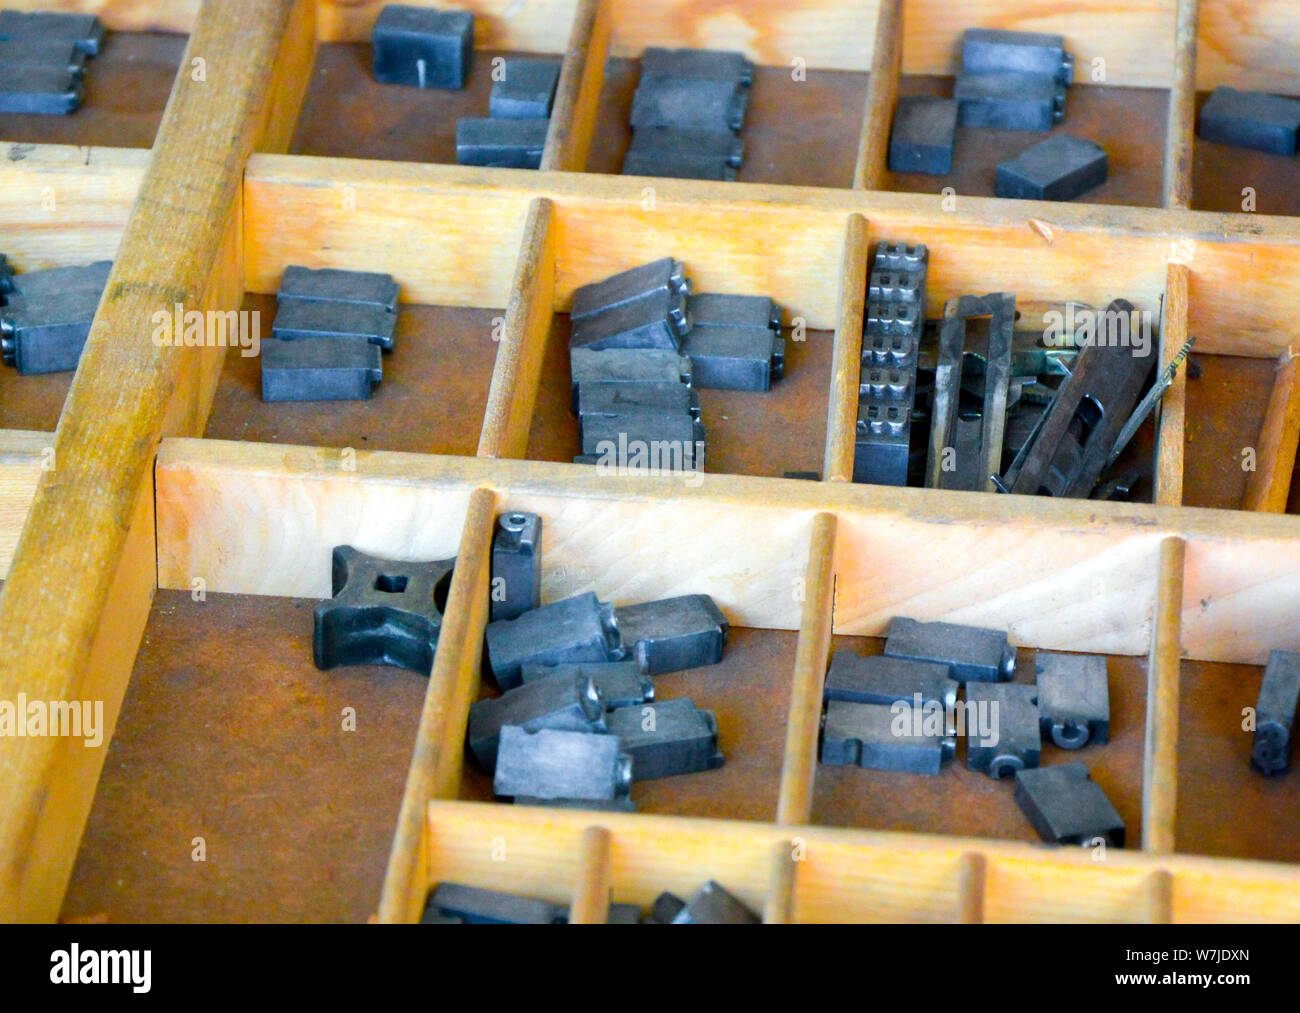 Eine alte hölzerne Sortierbox für eine Zusammenstellung der Buchdruck Art Ornamente, meist ein veraltetes Verfahren, außer für handwerkliche Beschäftigungen Stockfoto